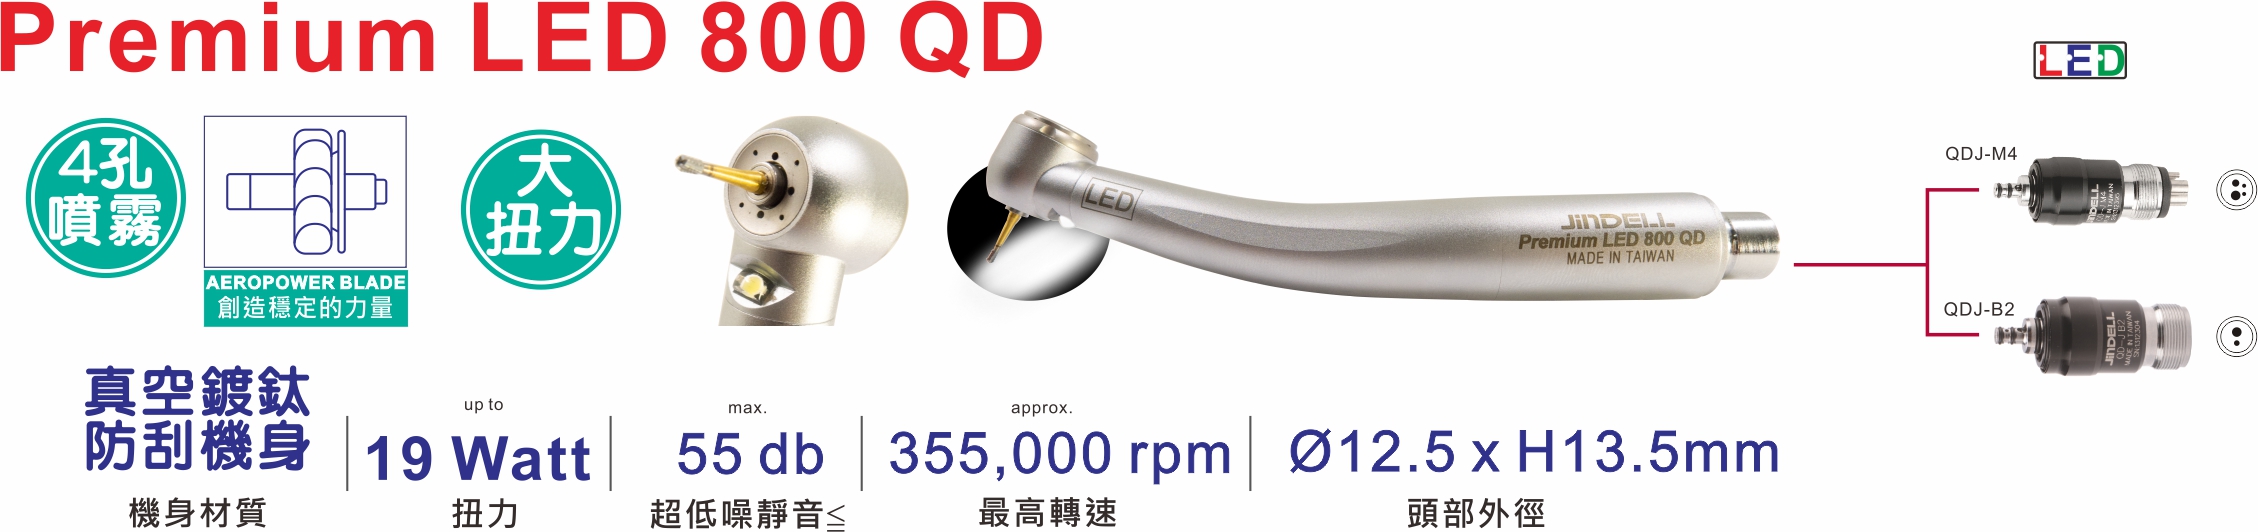 Premium LED 800 QD 中文特點